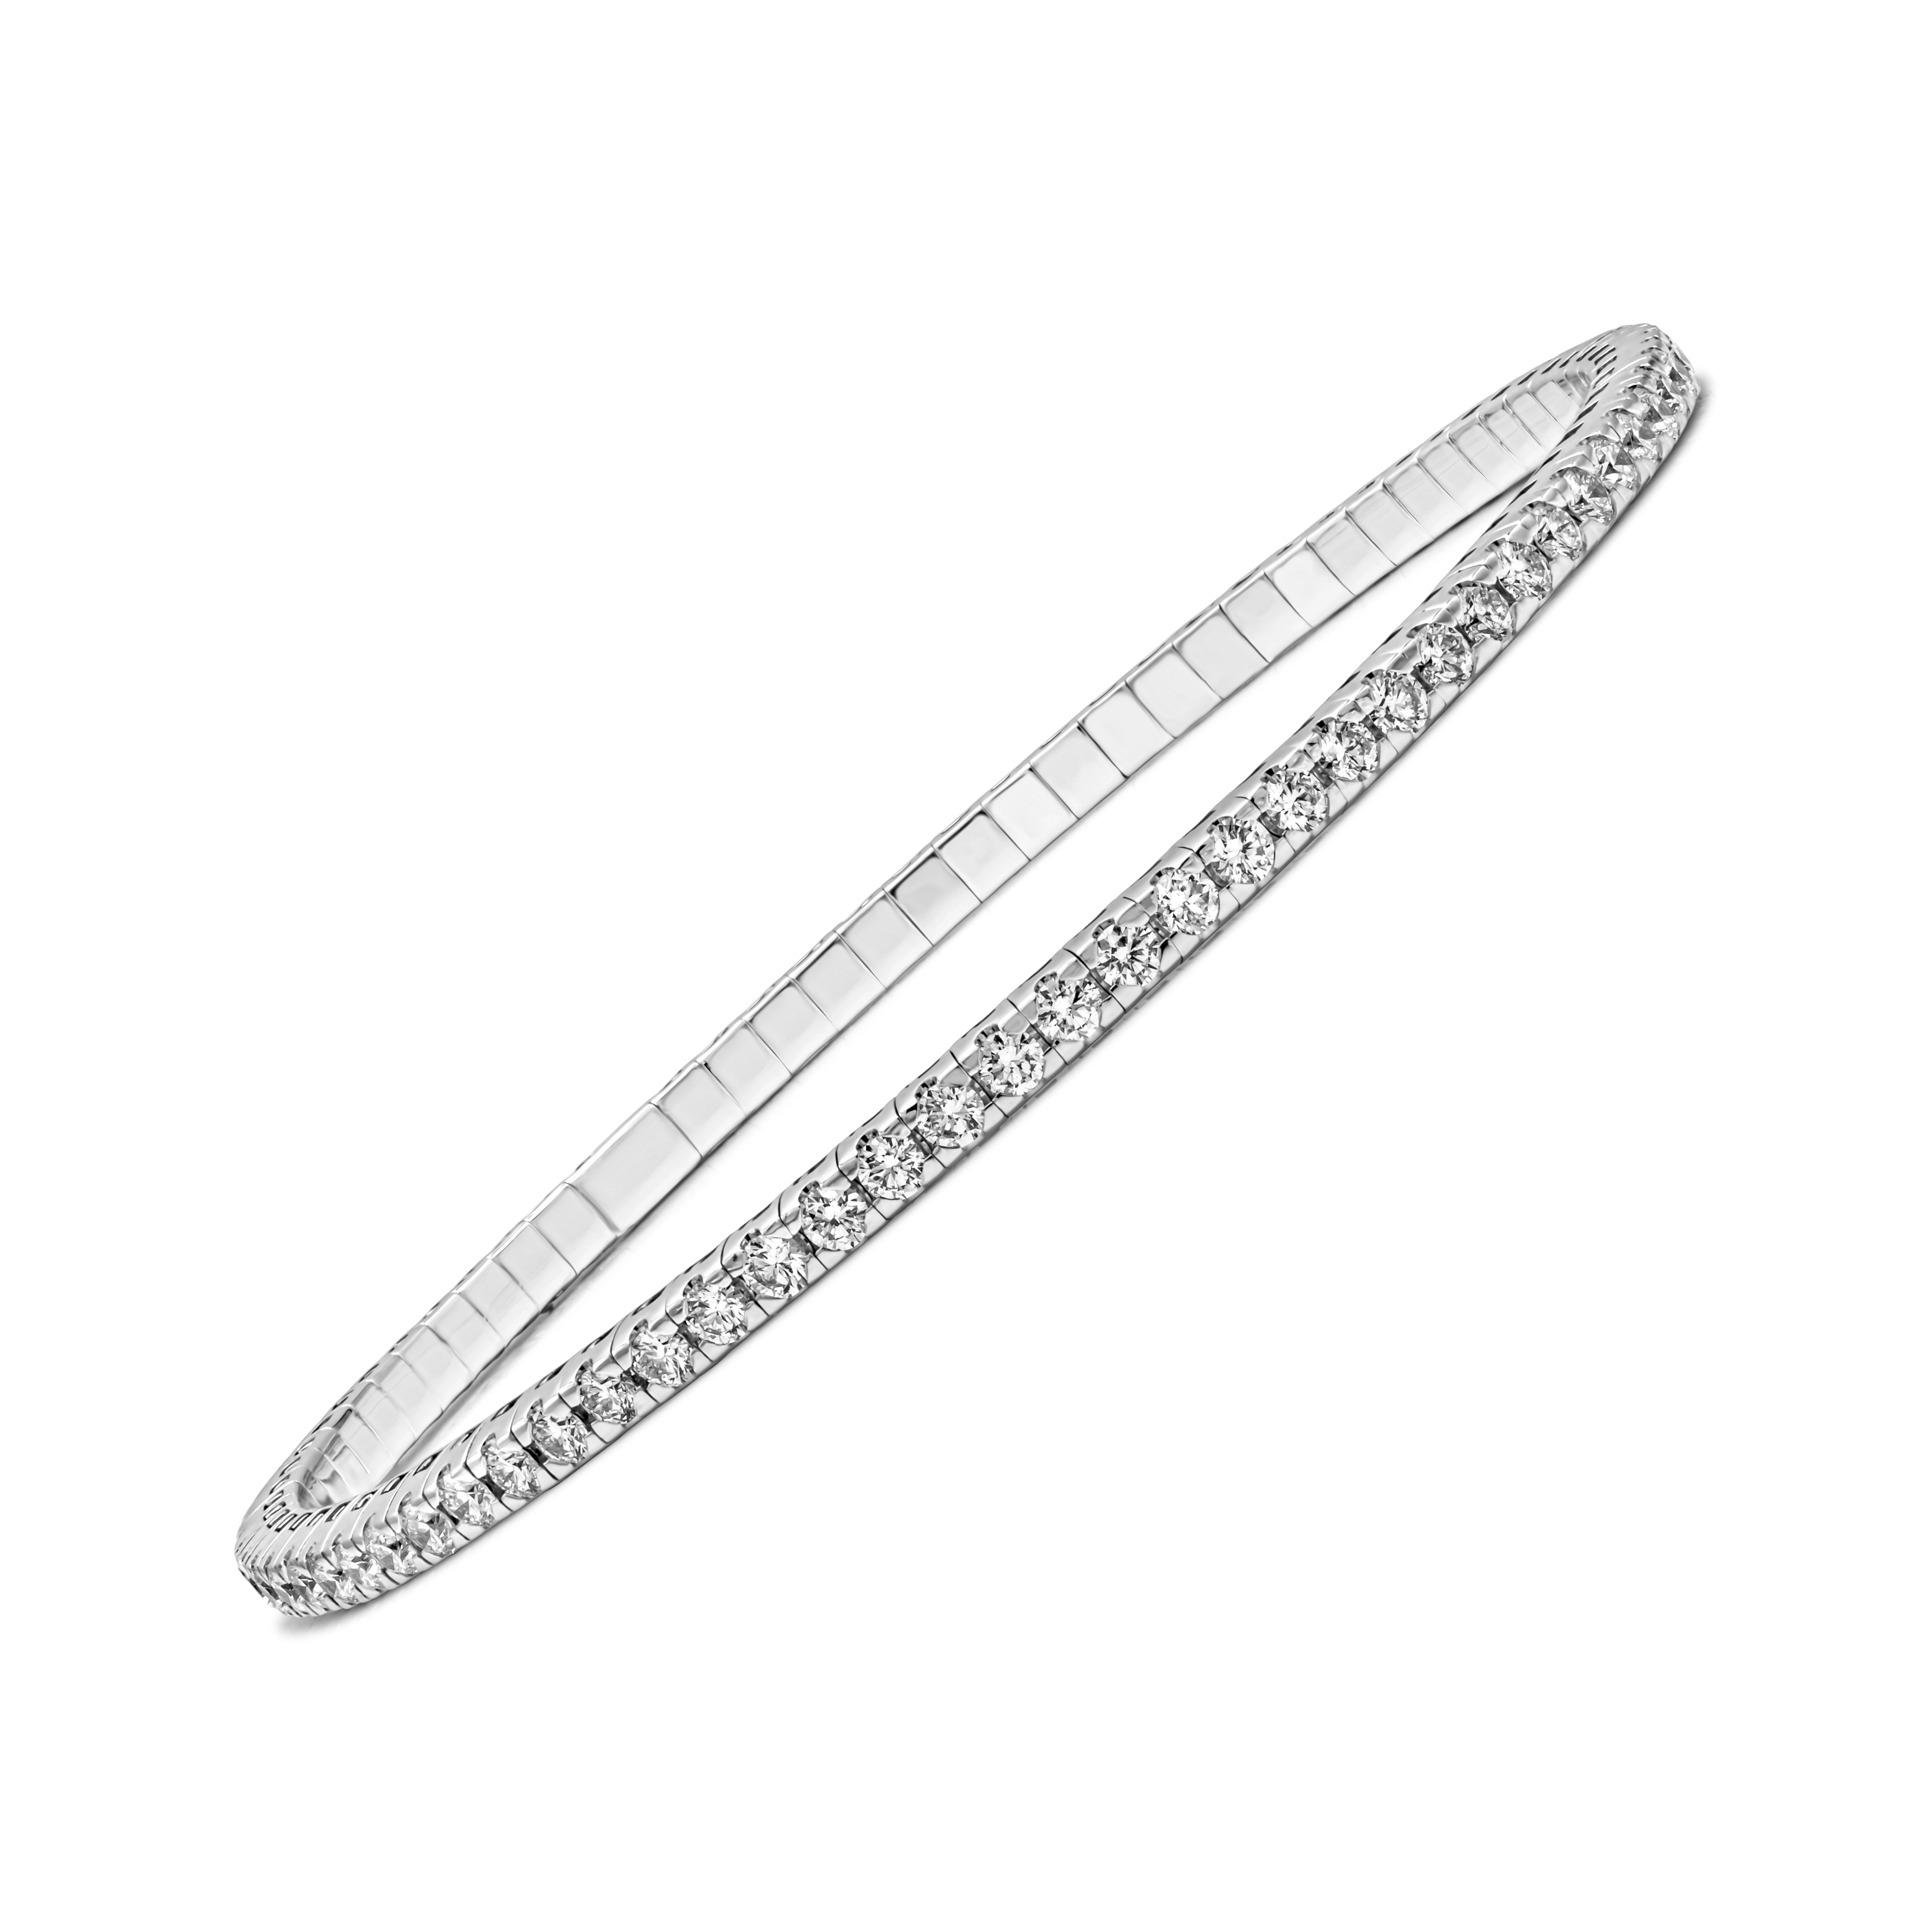 Roman Malakov Bracelet tennis extensible avec diamants taille ronde de 2.54 carats au total